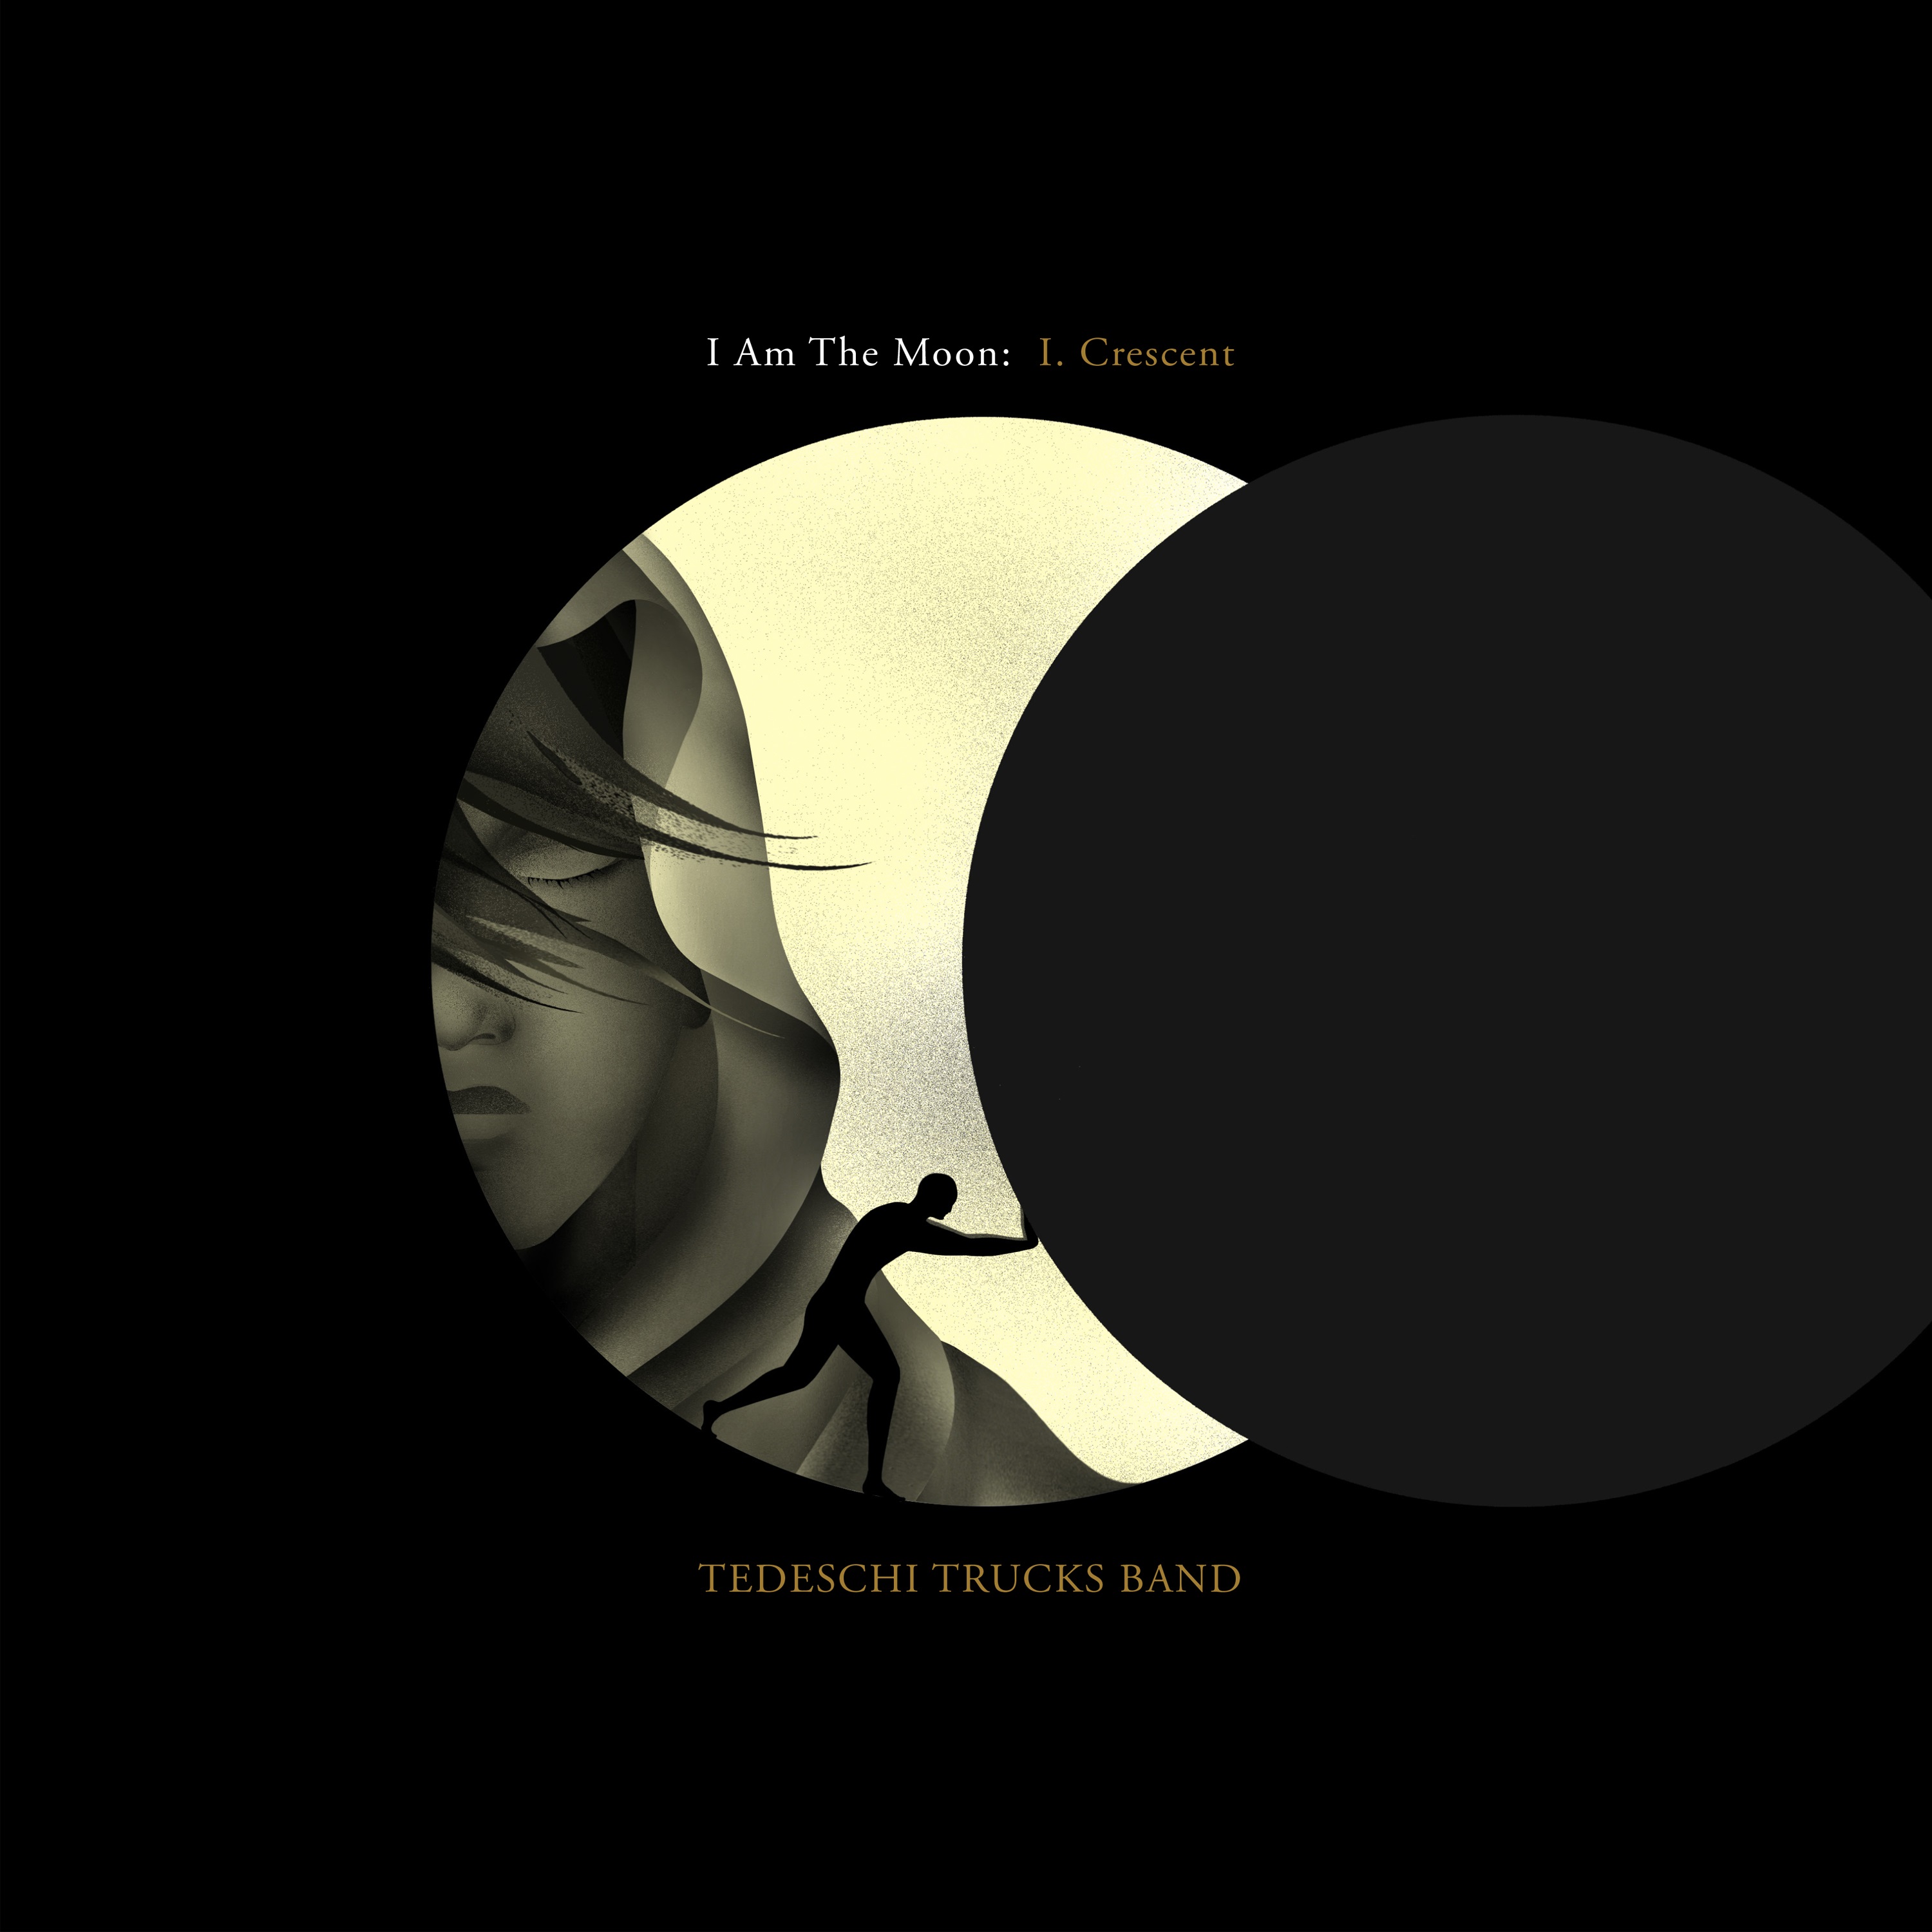 I Am the Moon: I. Crescent|Tedeschi Trucks Band